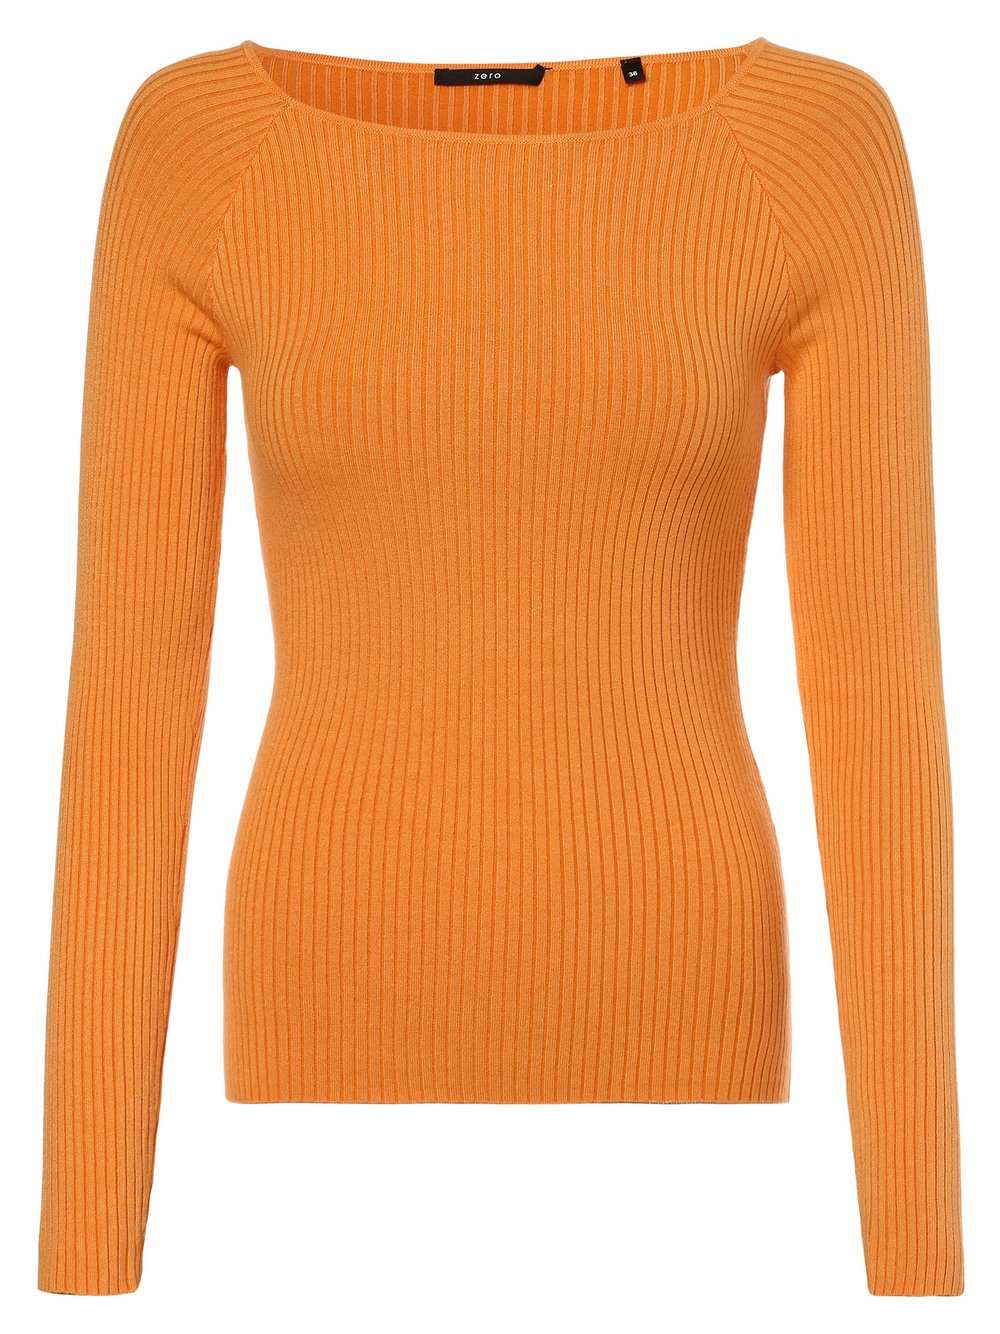 Zero - Sweter damski, pomarańczowy